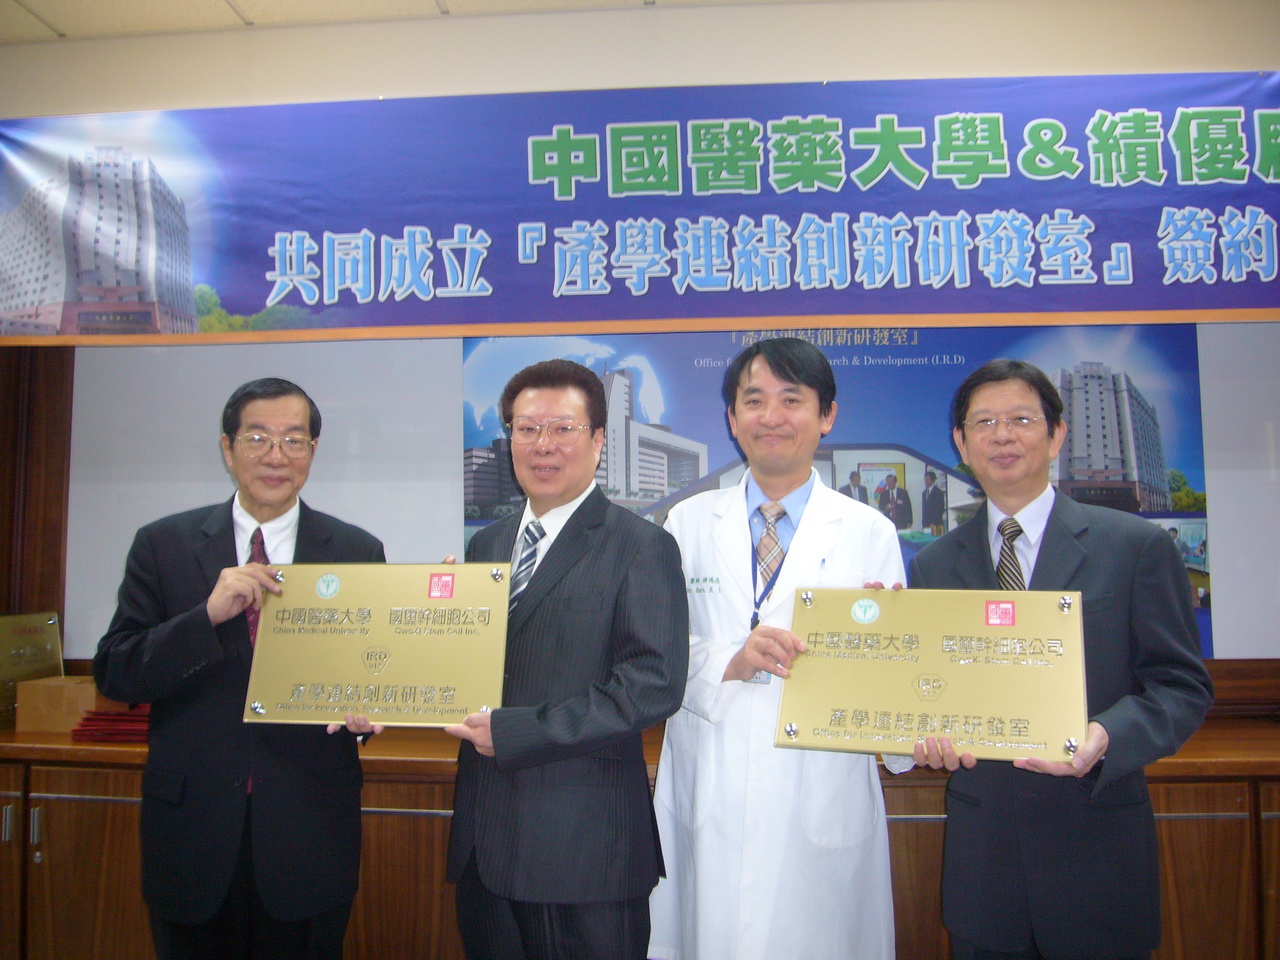 黃榮村校長（左）、陳偉德副校長（右）頒發『產學連結創新研發室』識別系統給合作廠商